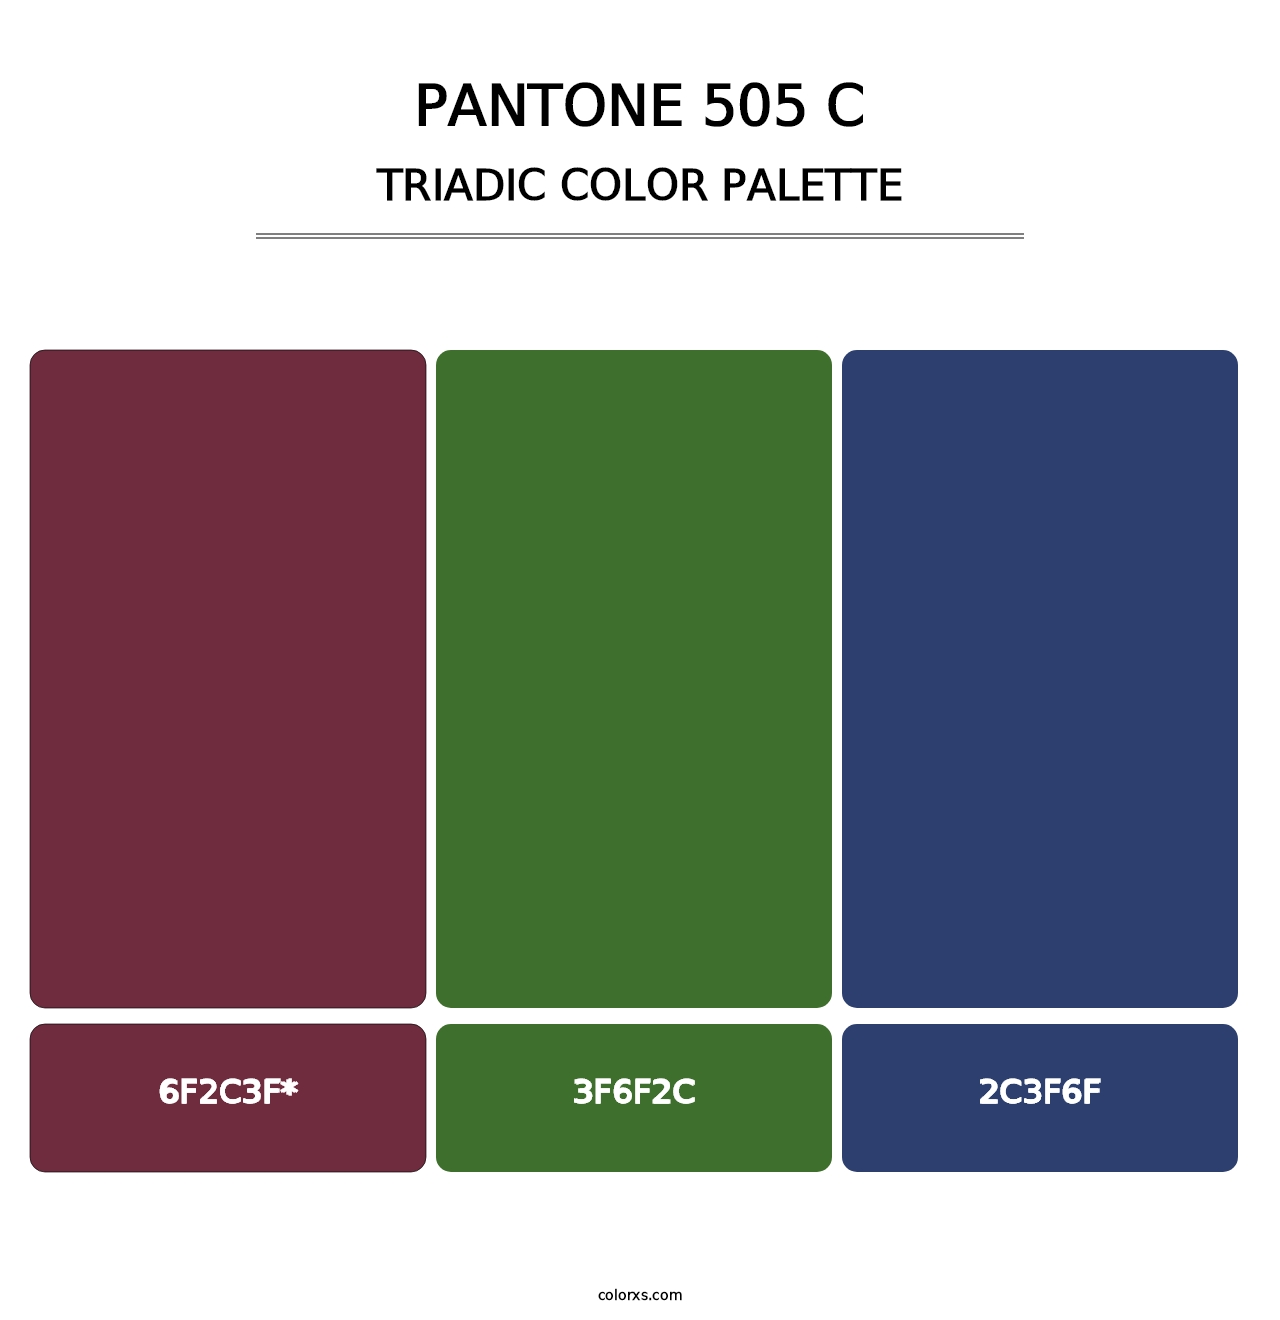 PANTONE 505 C - Triadic Color Palette